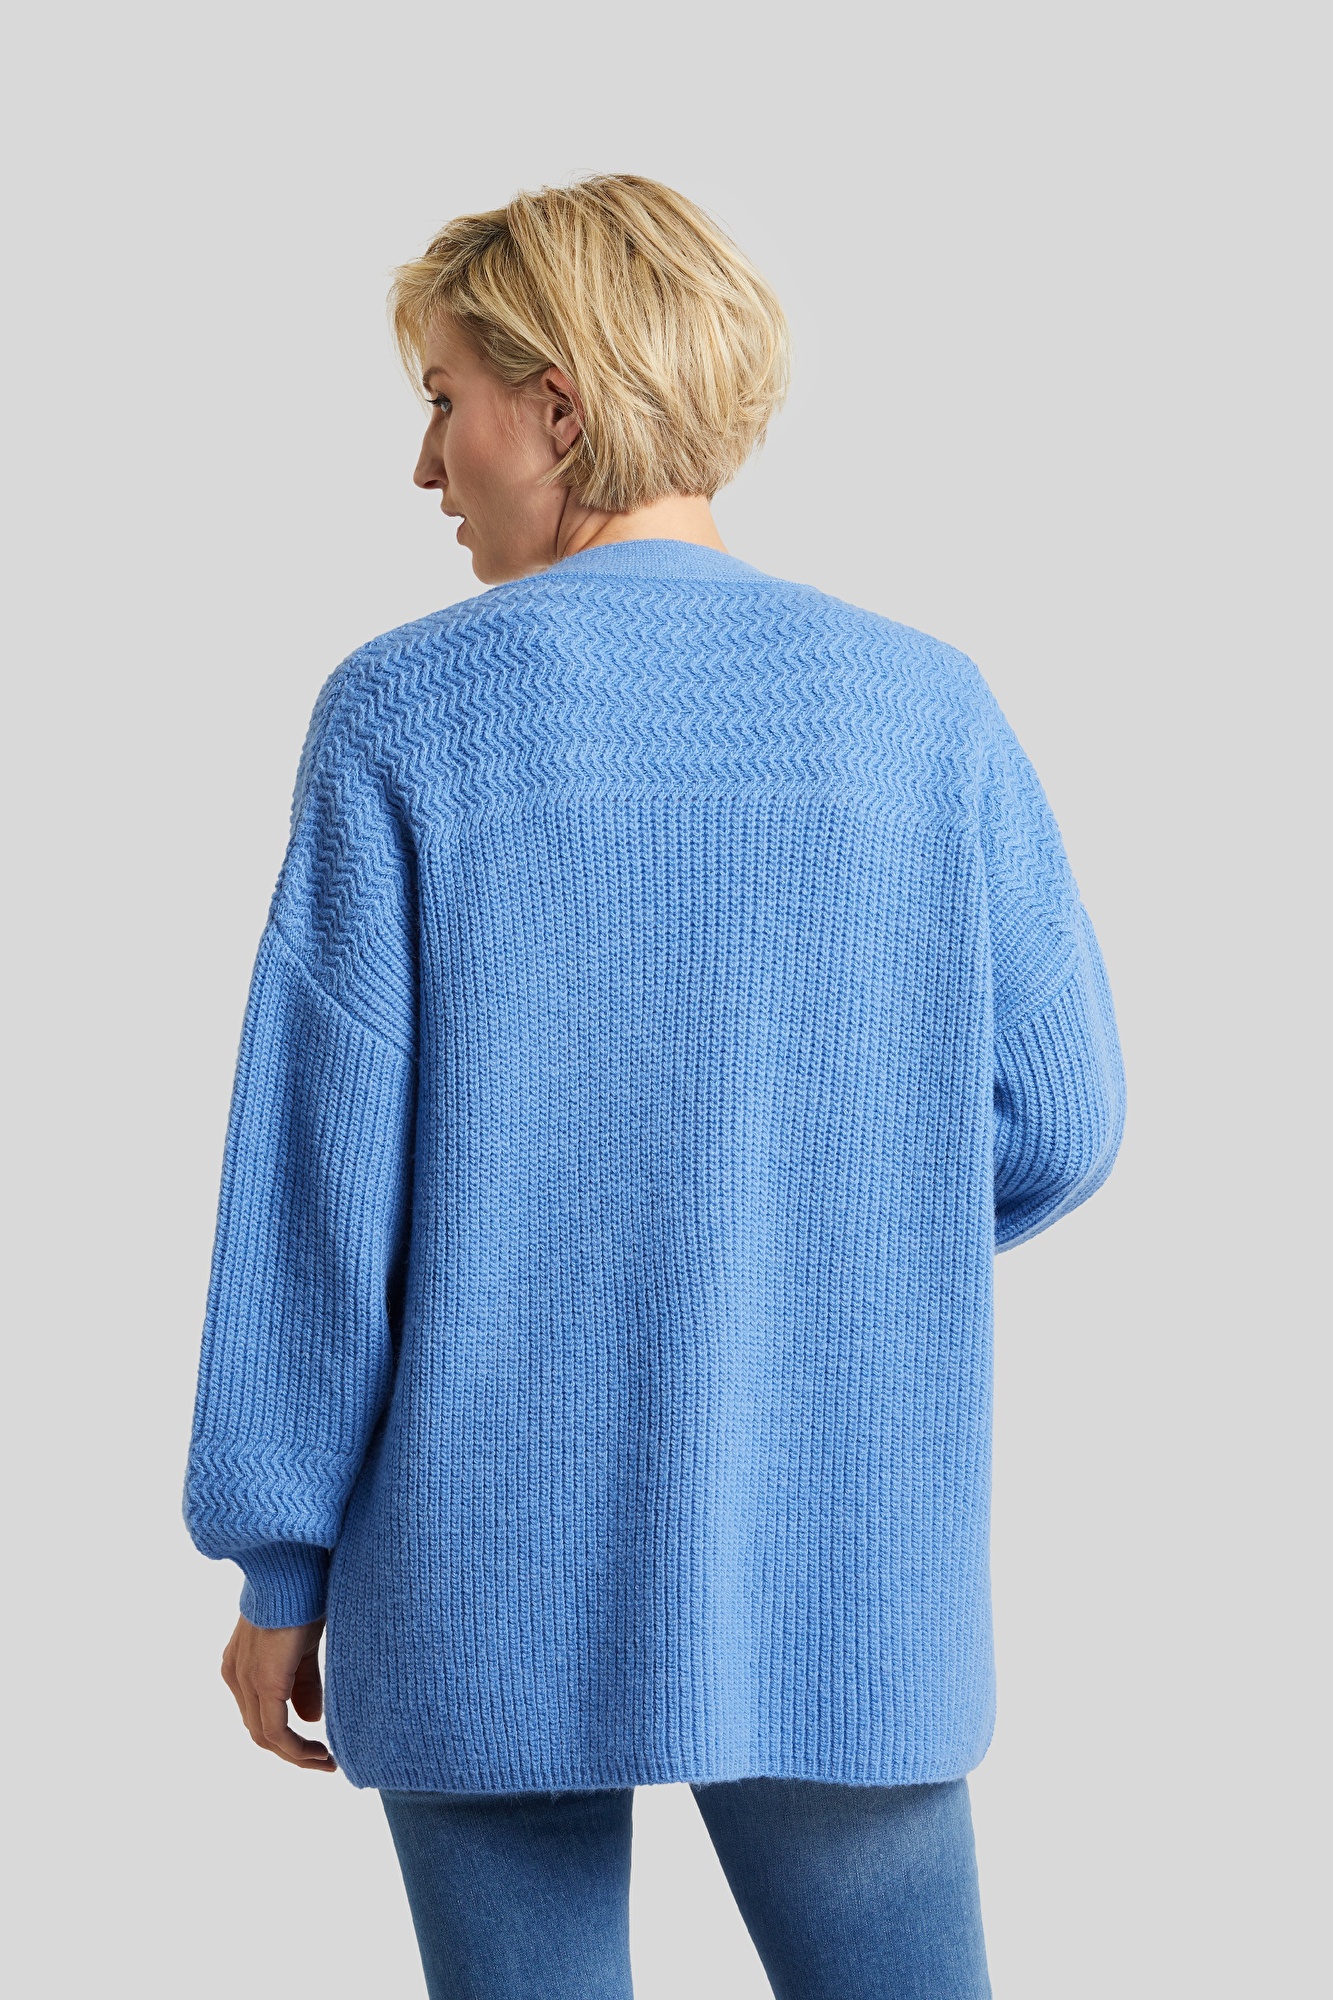 Lässige Strickjacke aus hochwertiger Alpaka-Wollmischung in blau | bugatti